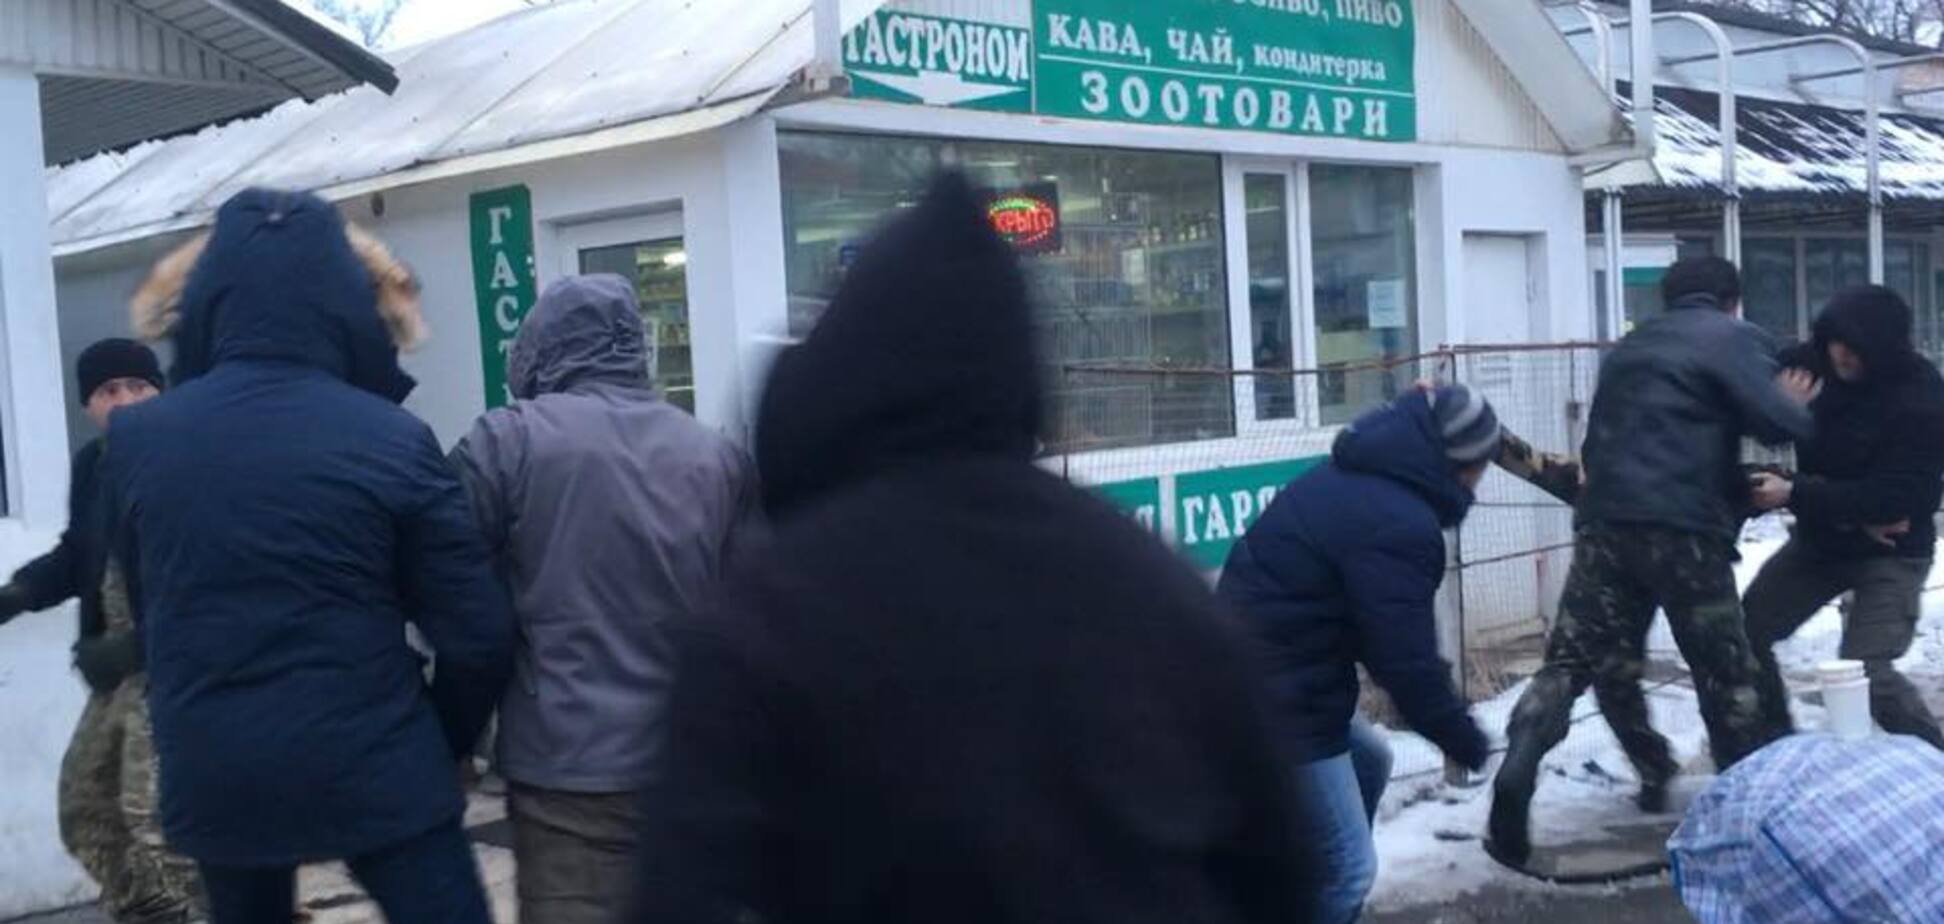 'Ветеран - не нищий': в Киеве наказали банду в камуфляже